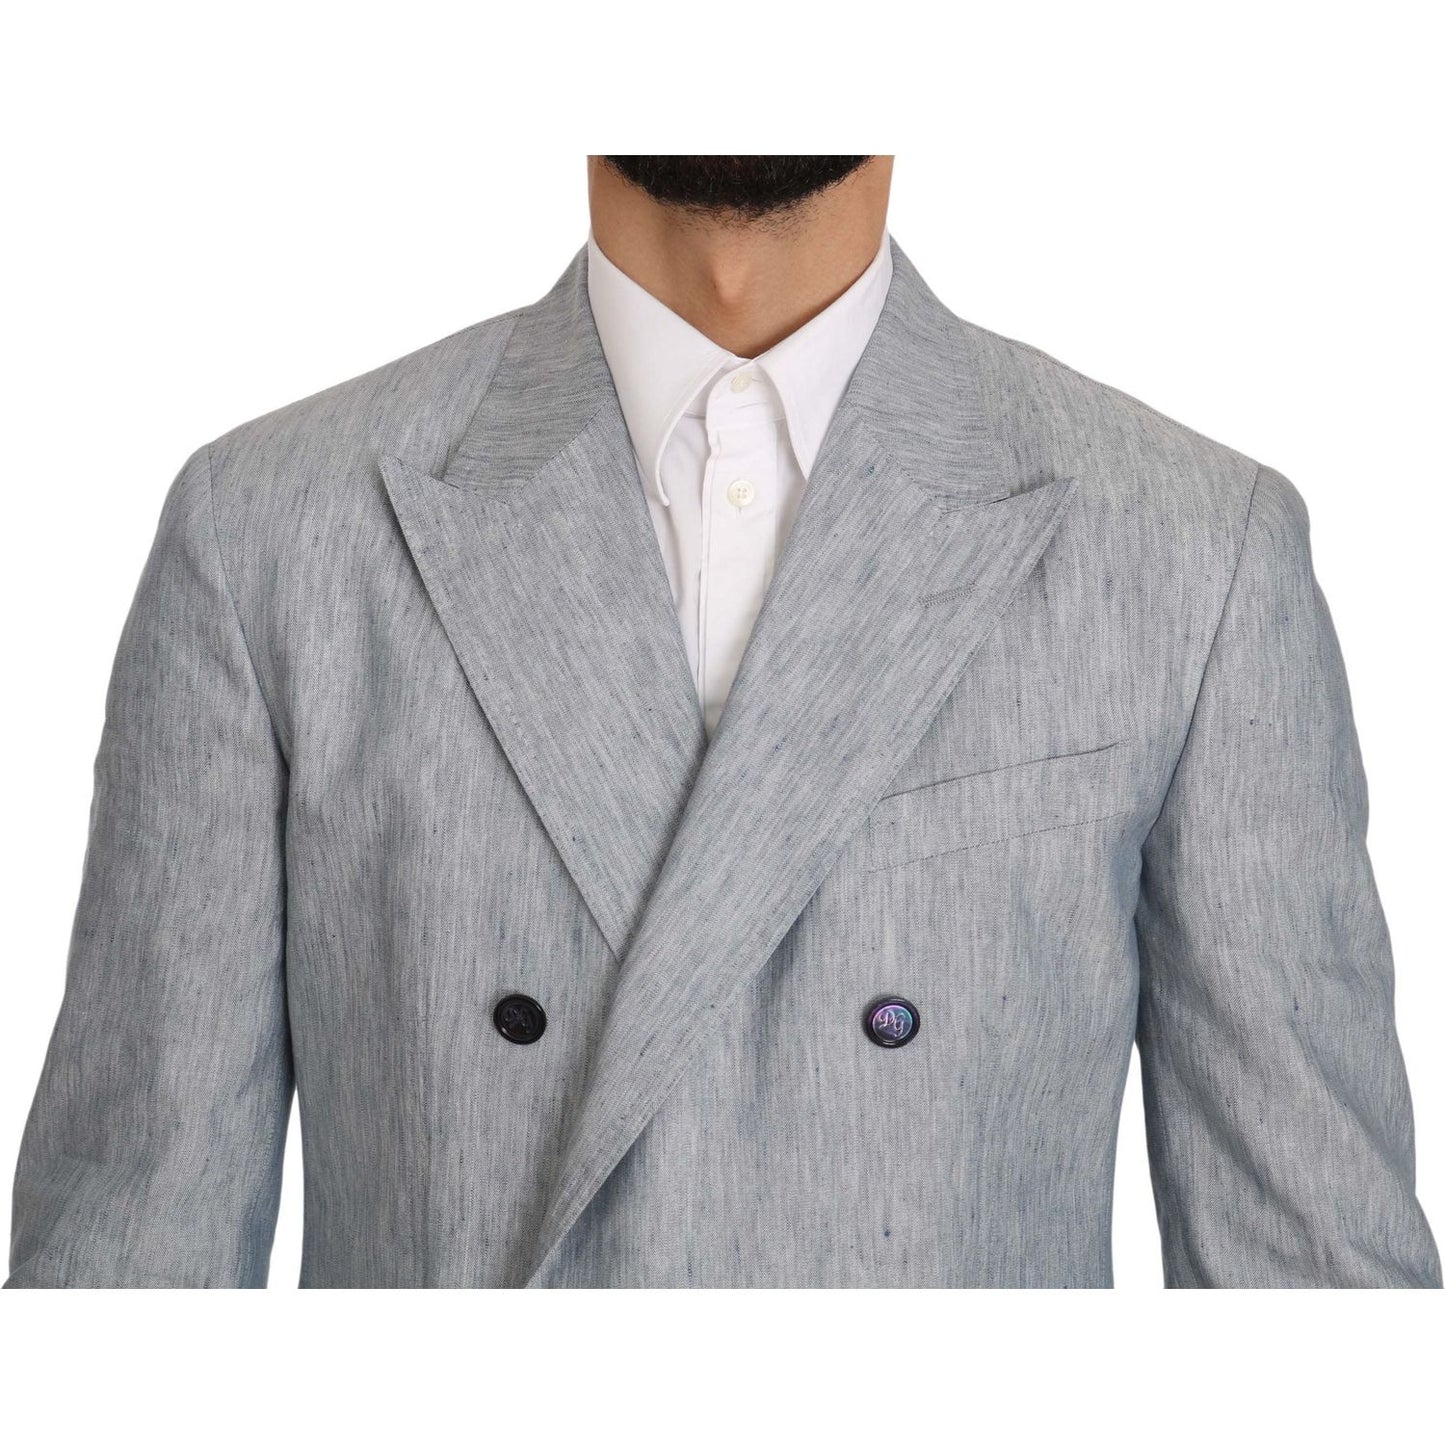 Dolce & Gabbana Elegant Light Blue Double Breasted Blazer blue-flax-napoli-jacket-coat-blazer IMG_0383-scaled.jpg